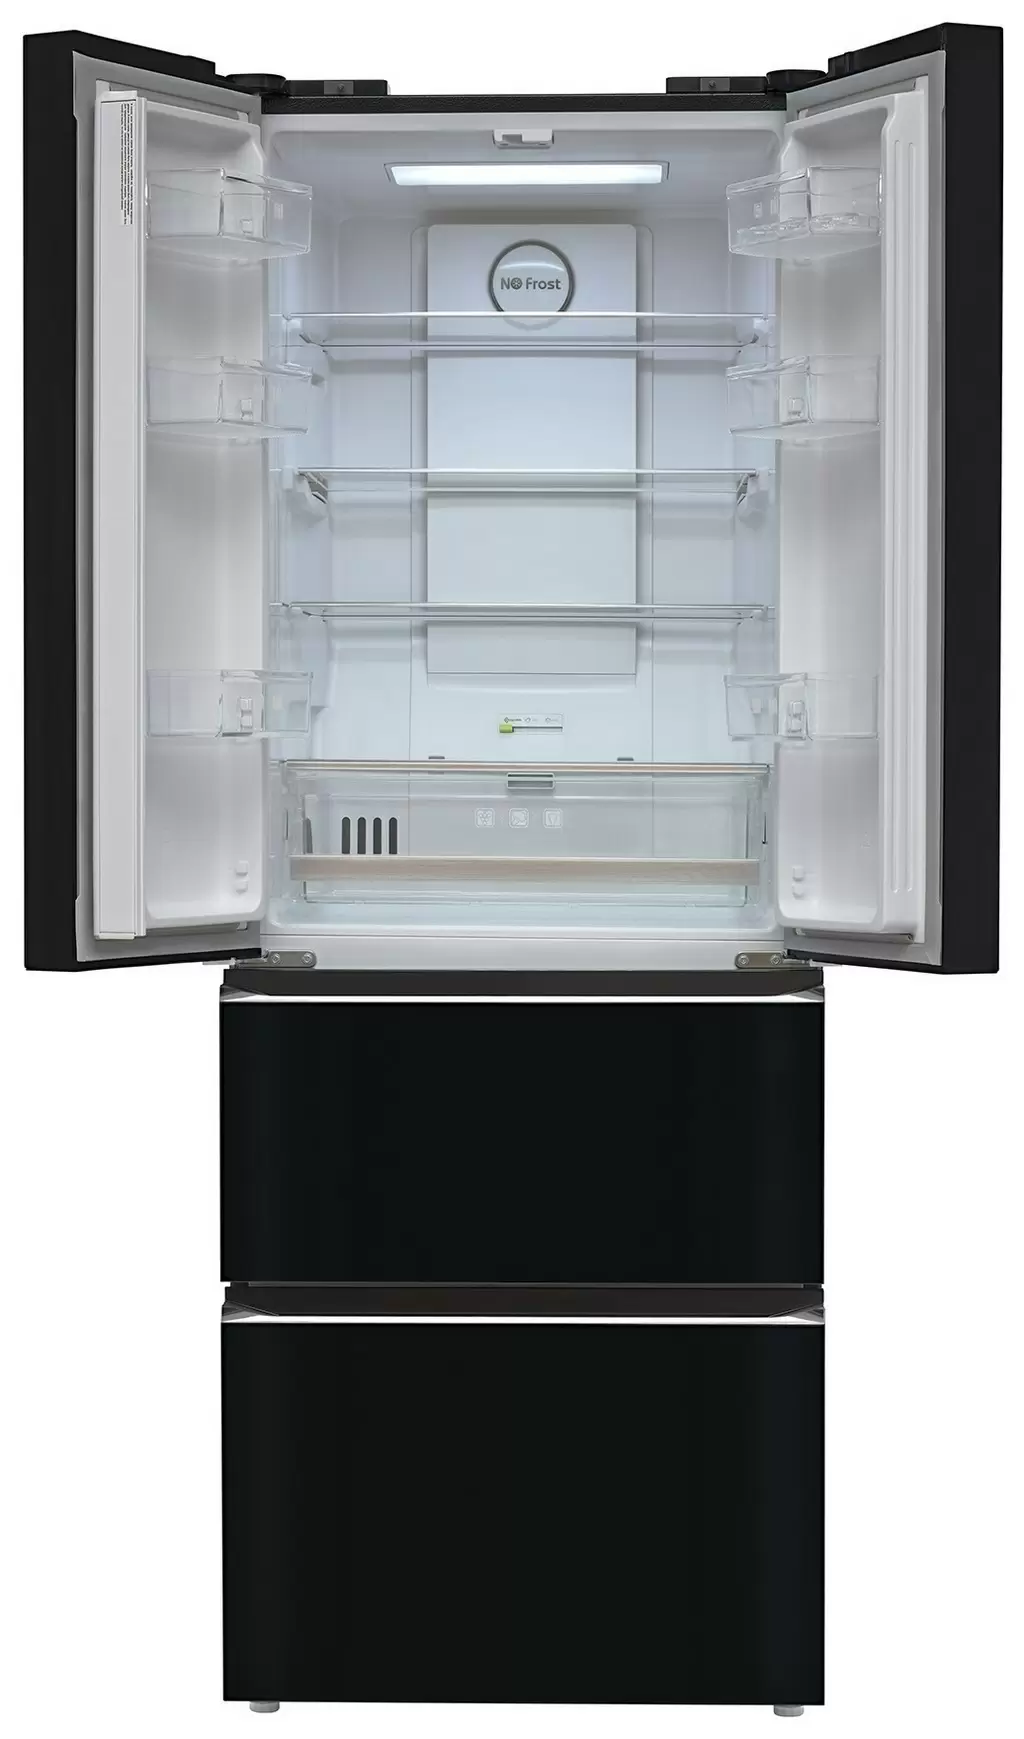 Холодильник Tesler RFD-361I, черный